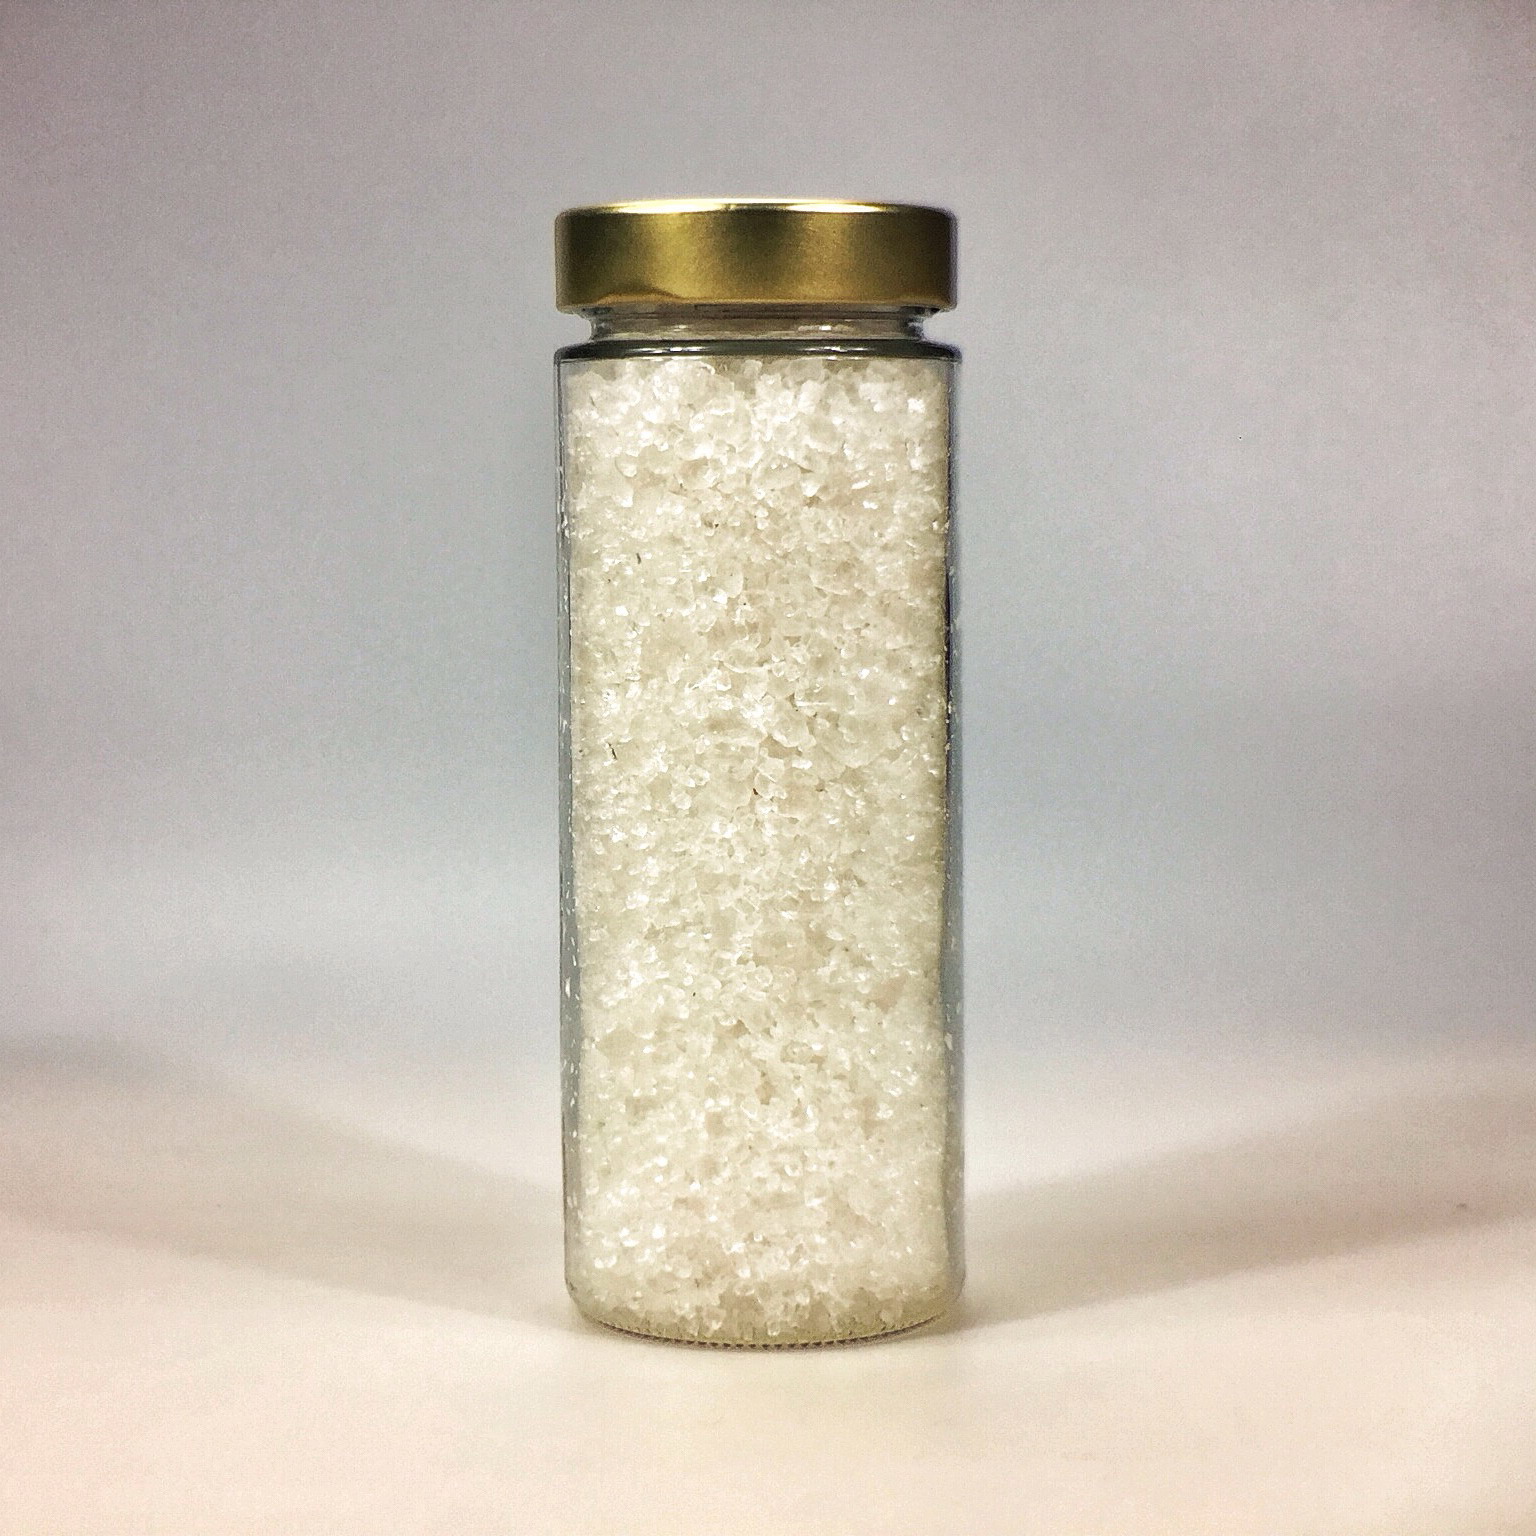 Halit Salz grob für Salzmühle im grossen Glas mit Golddeckel